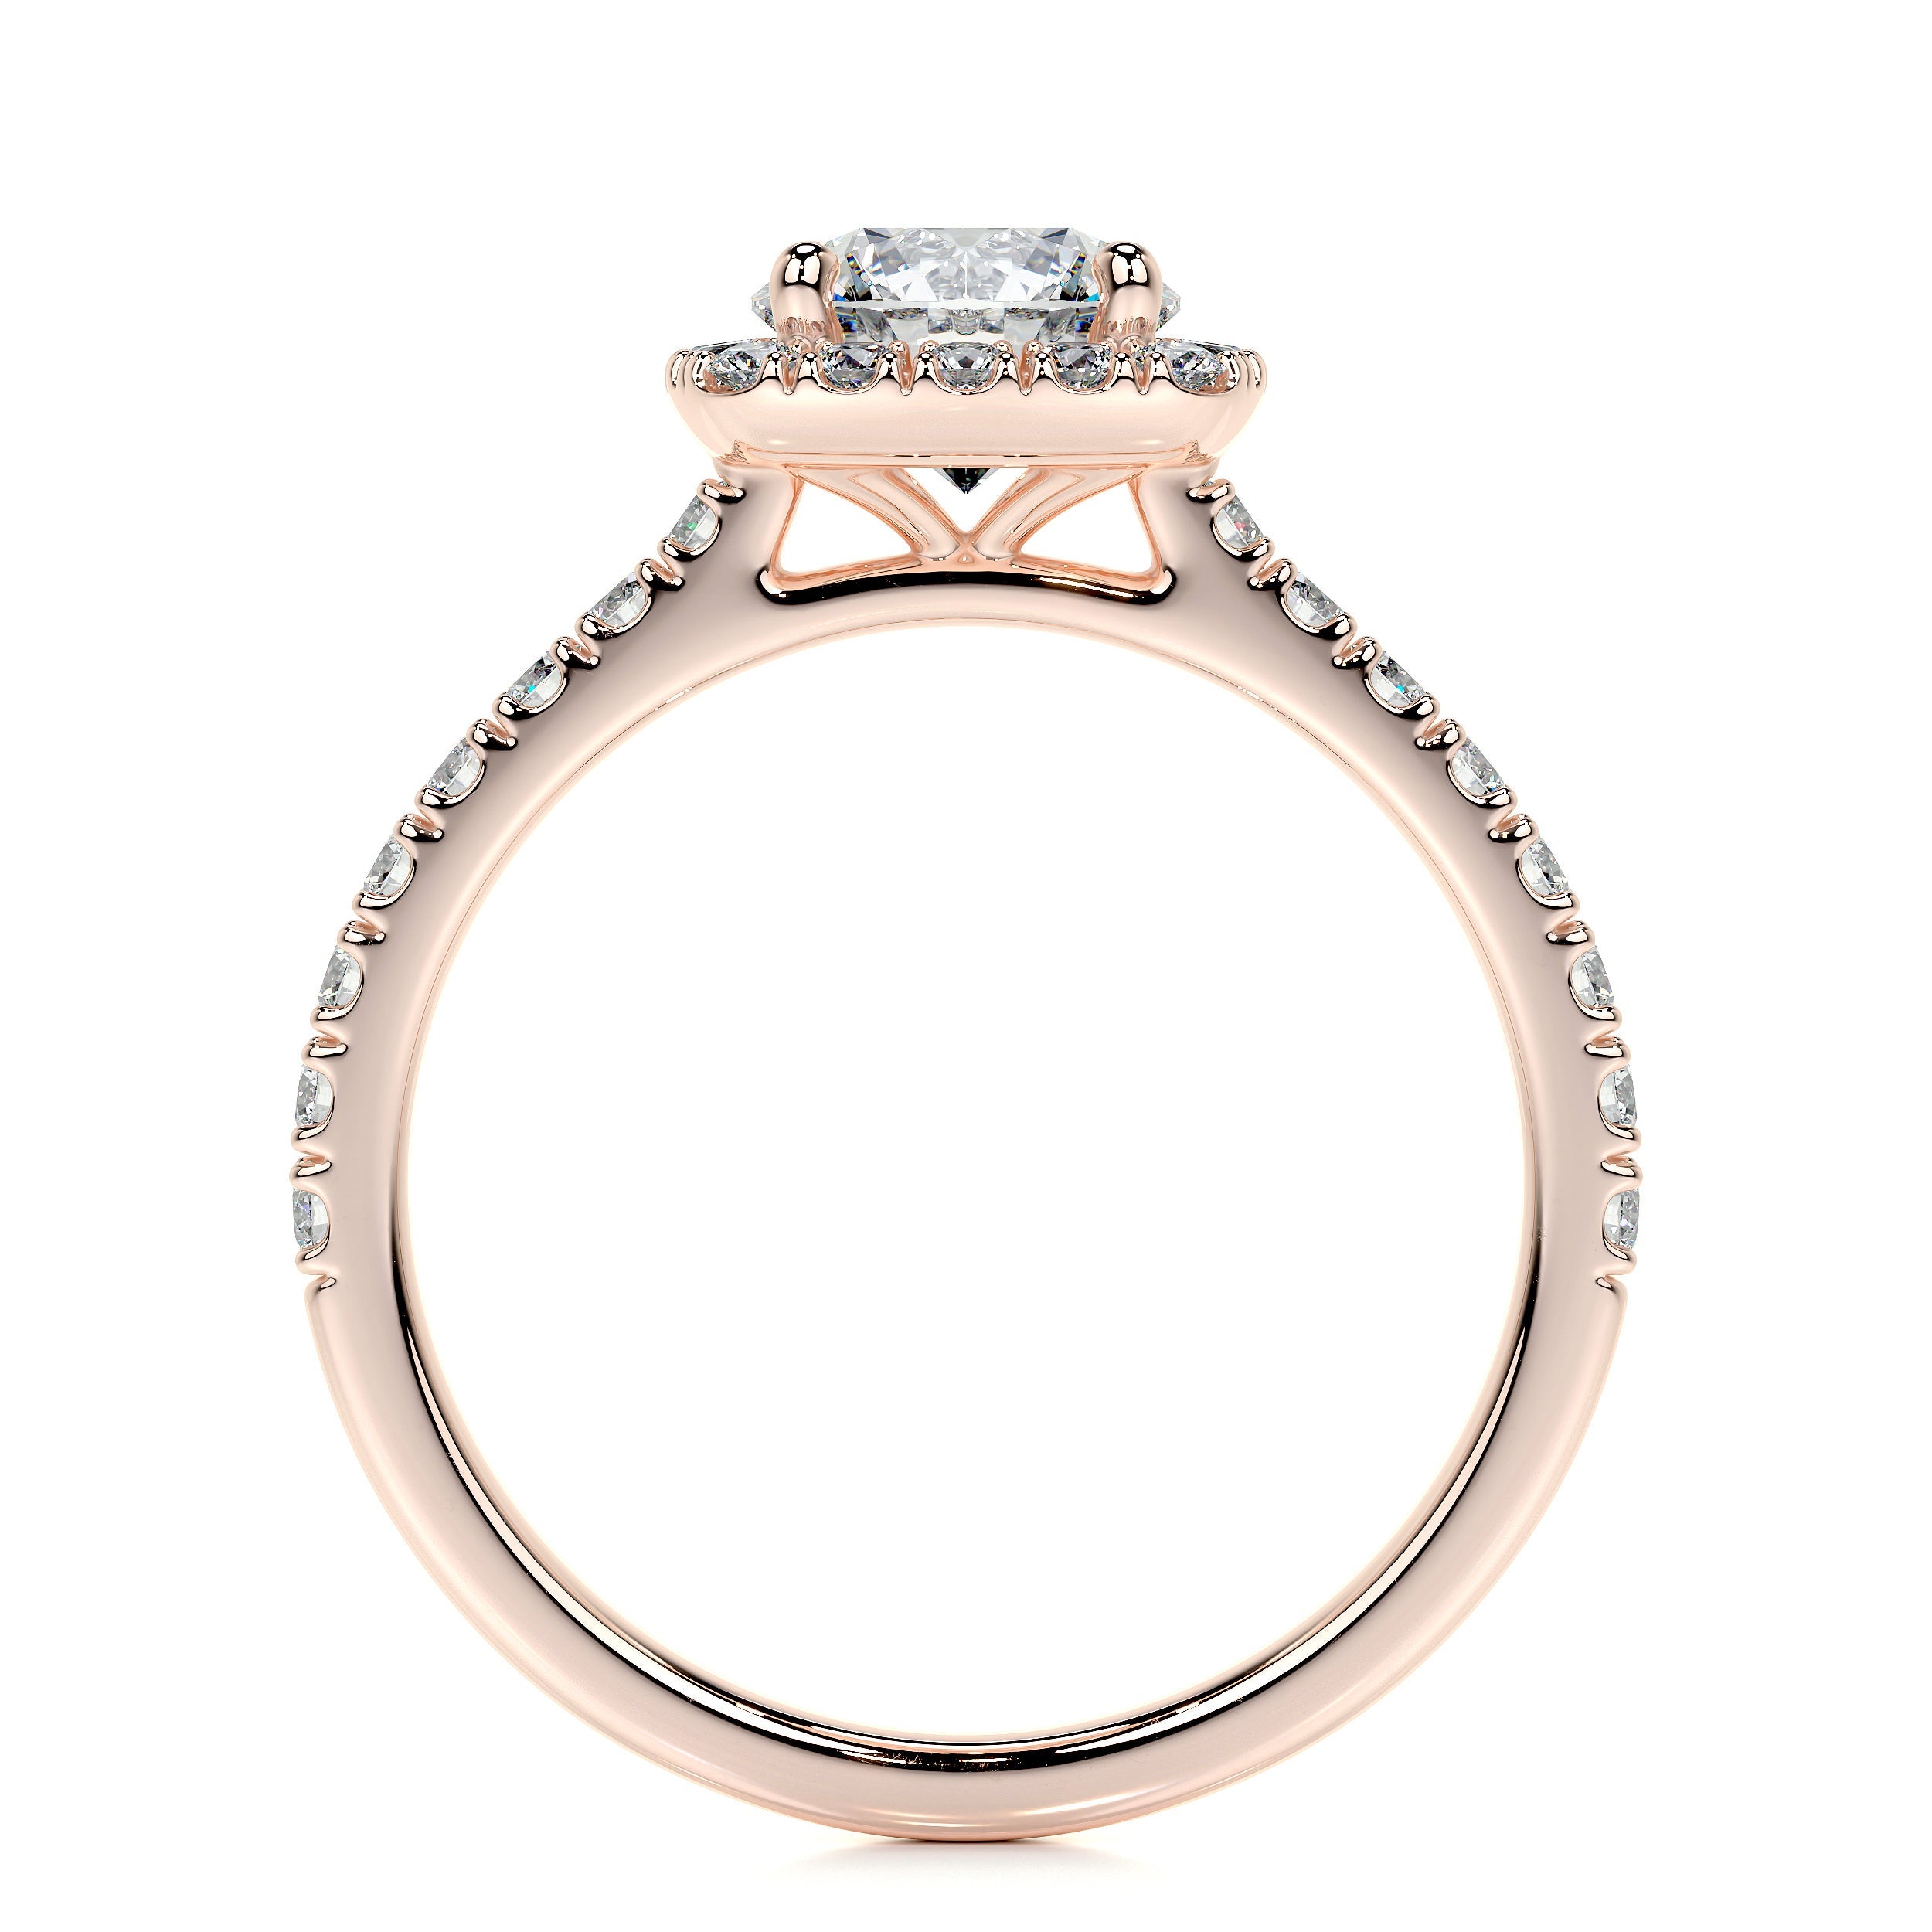 Claudia Lab Grown Diamond Ring   (1.4 Carat) -14K Rose Gold